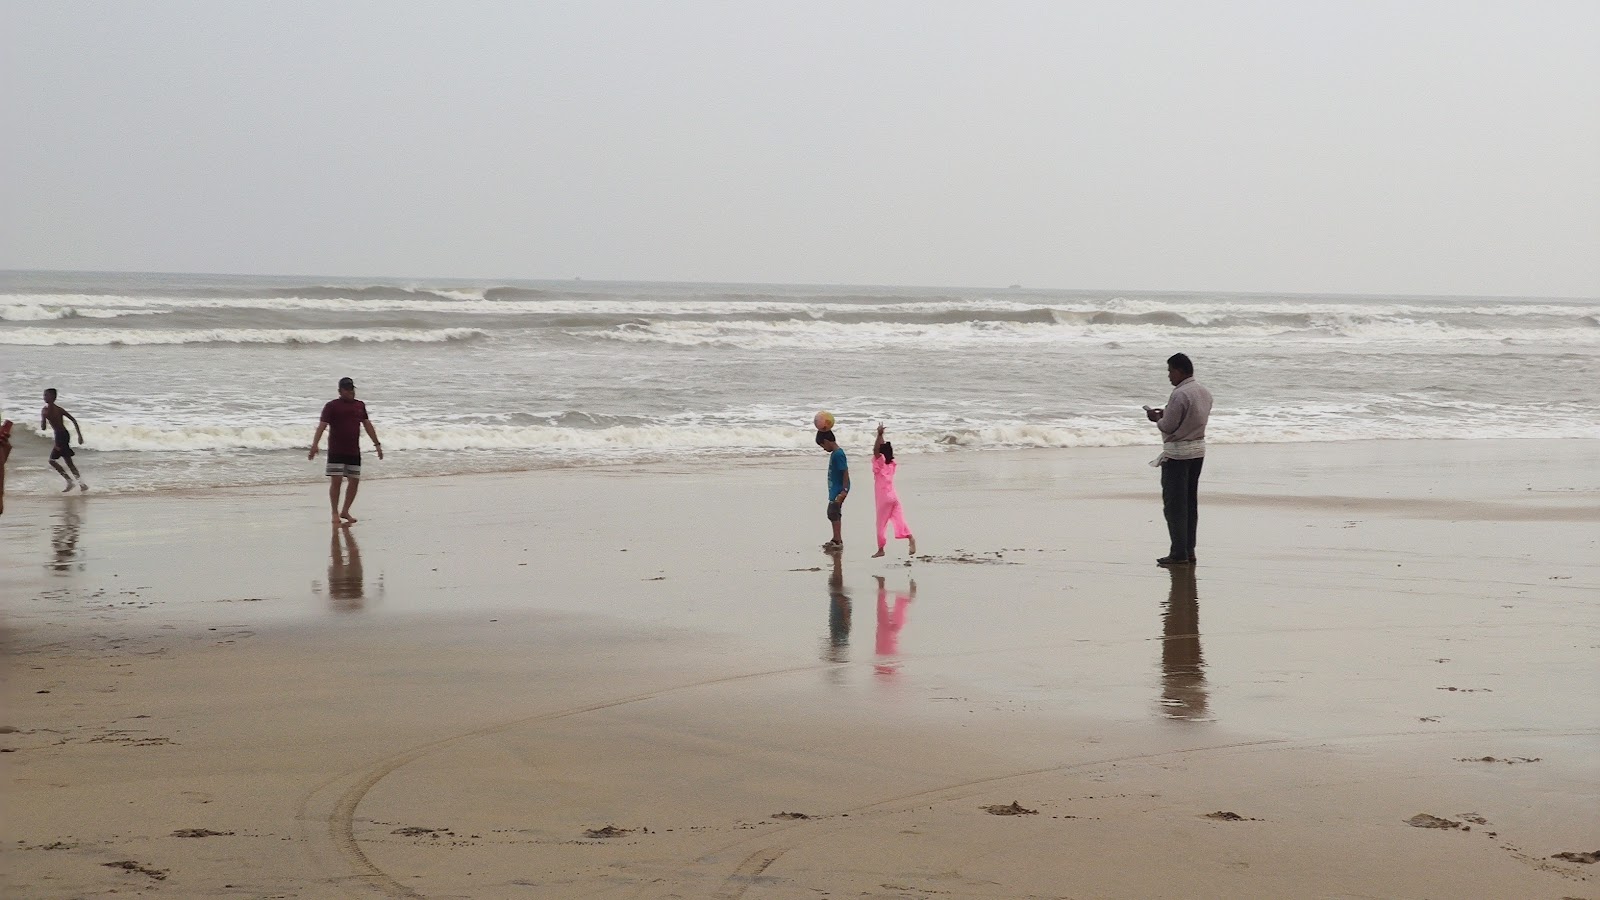 Fotografija Siali Sea Beach priljubljeno mesto med poznavalci sprostitve